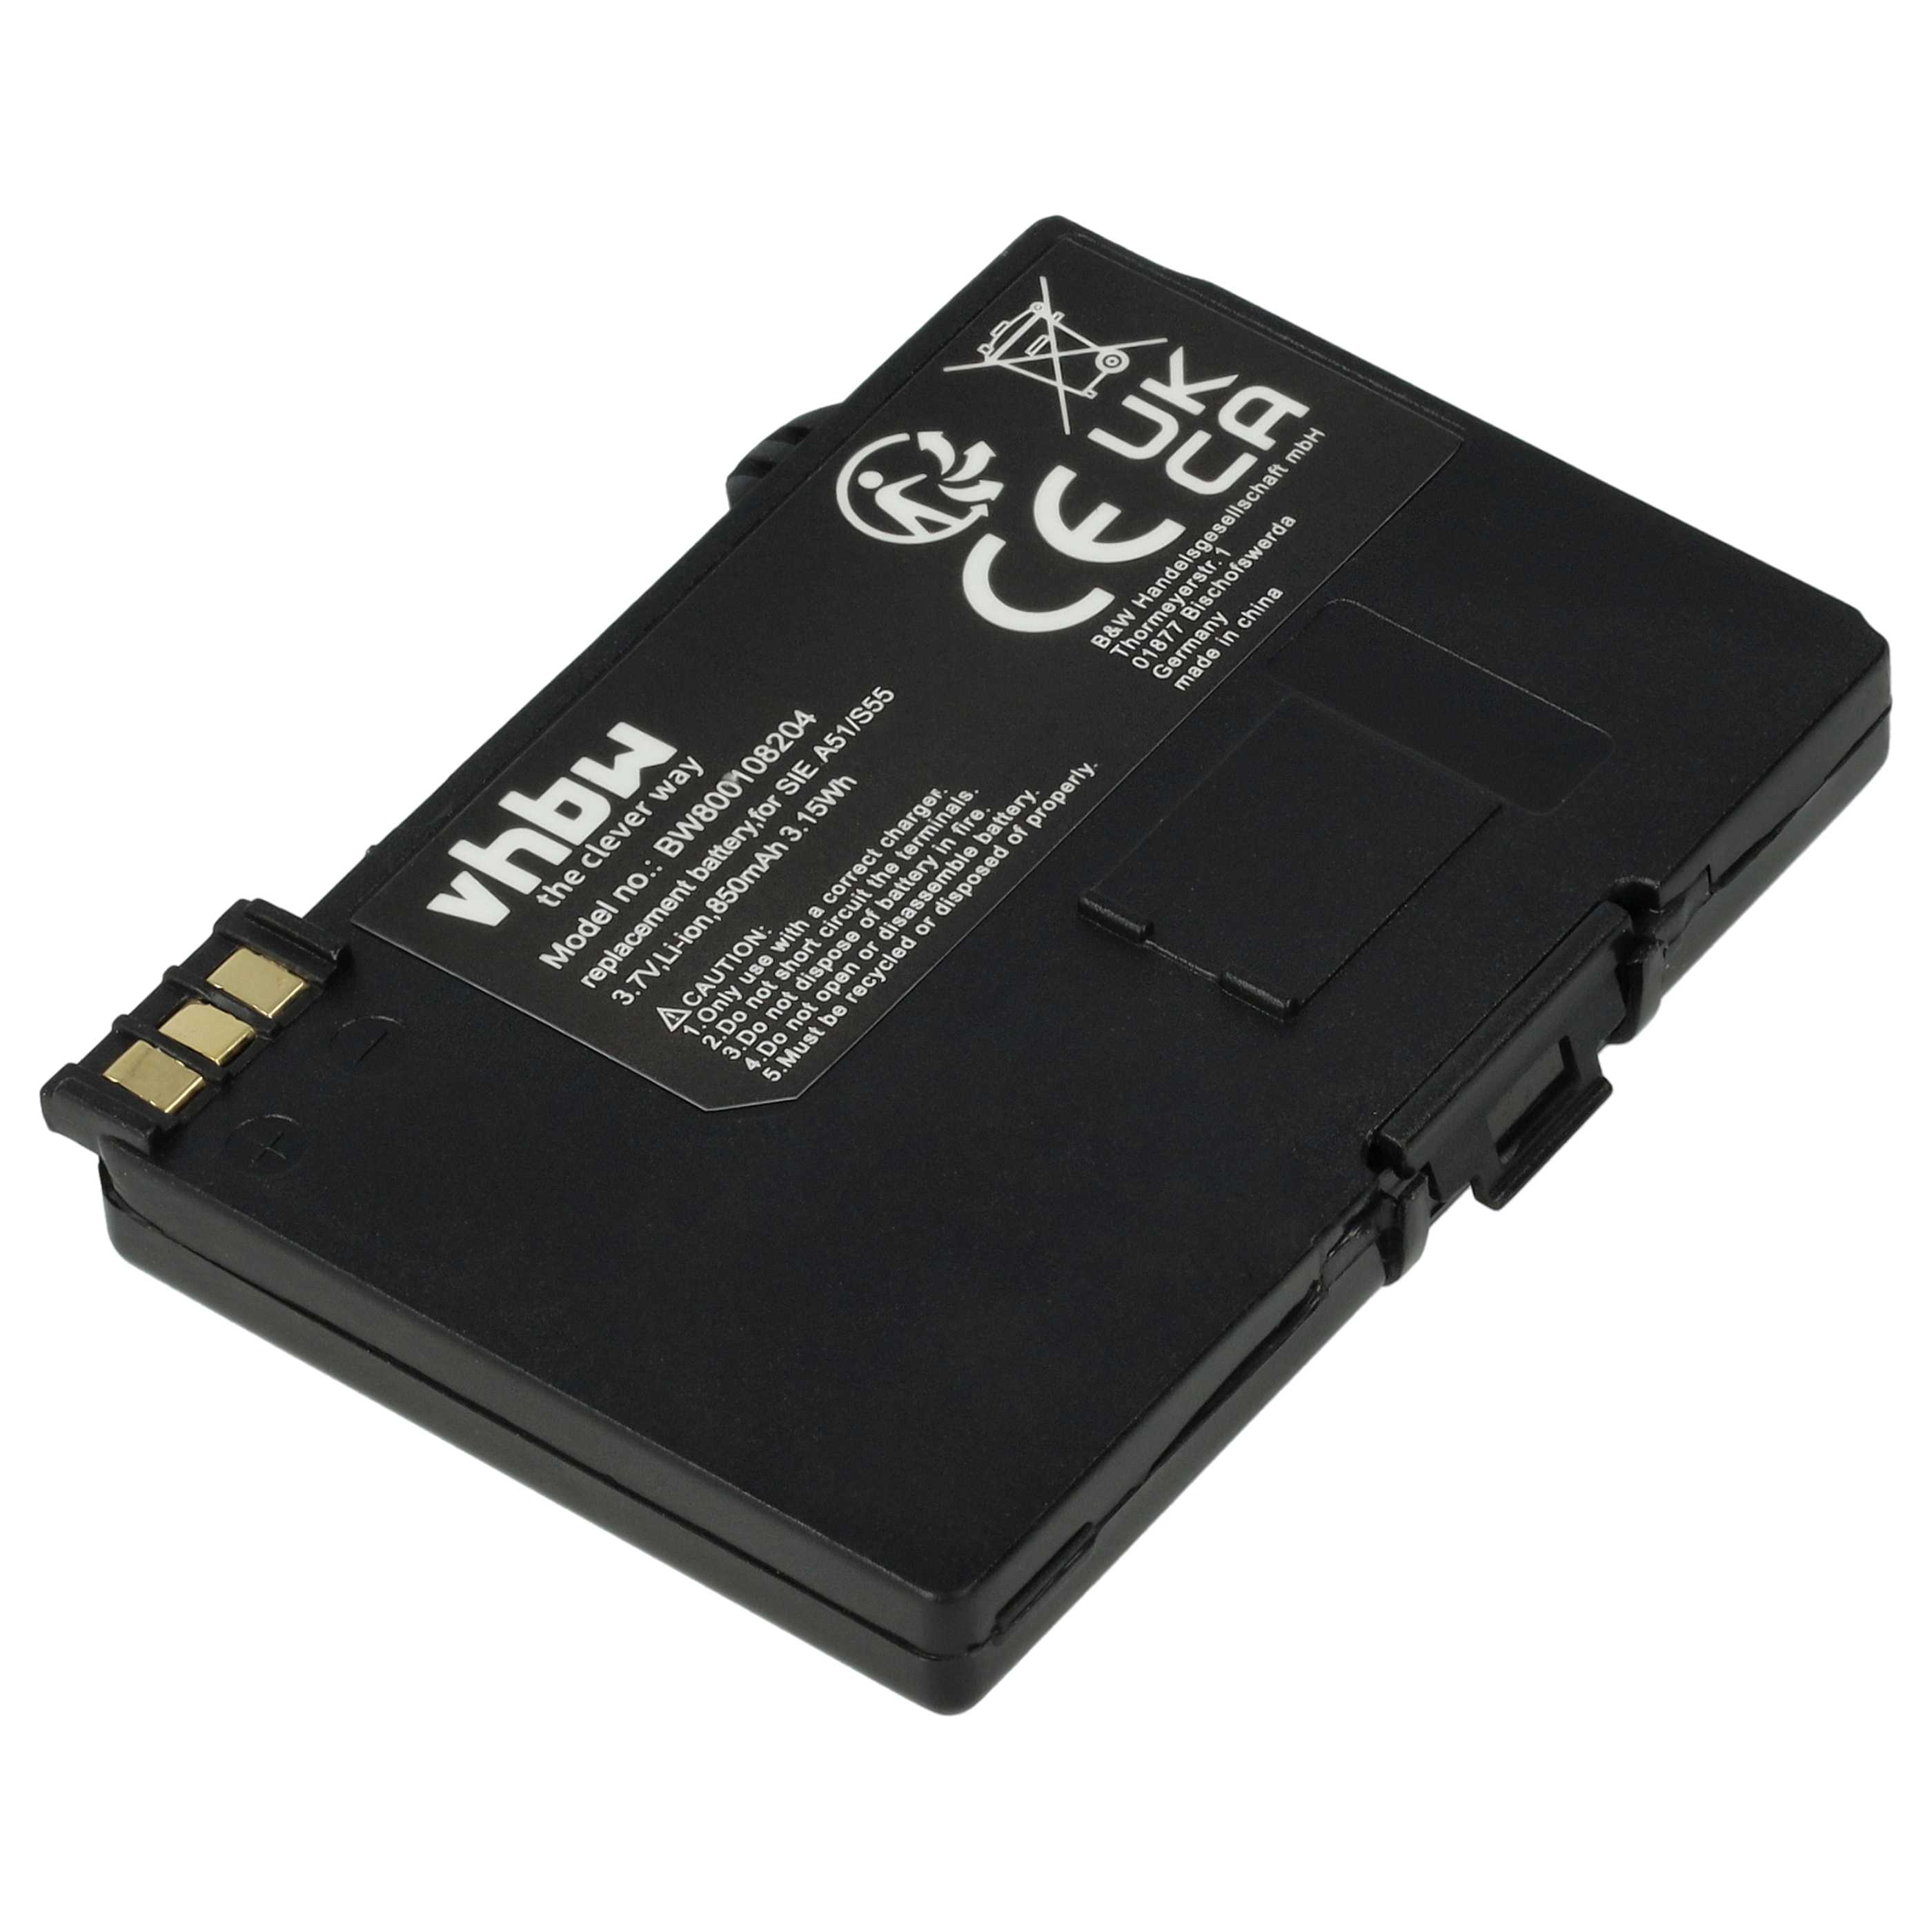 Batterie remplace EBA-510, L36880-N5601-A100, L36145-K1310-X401, BASIC56 pour téléphone - 850mAh 3,7V Li-ion